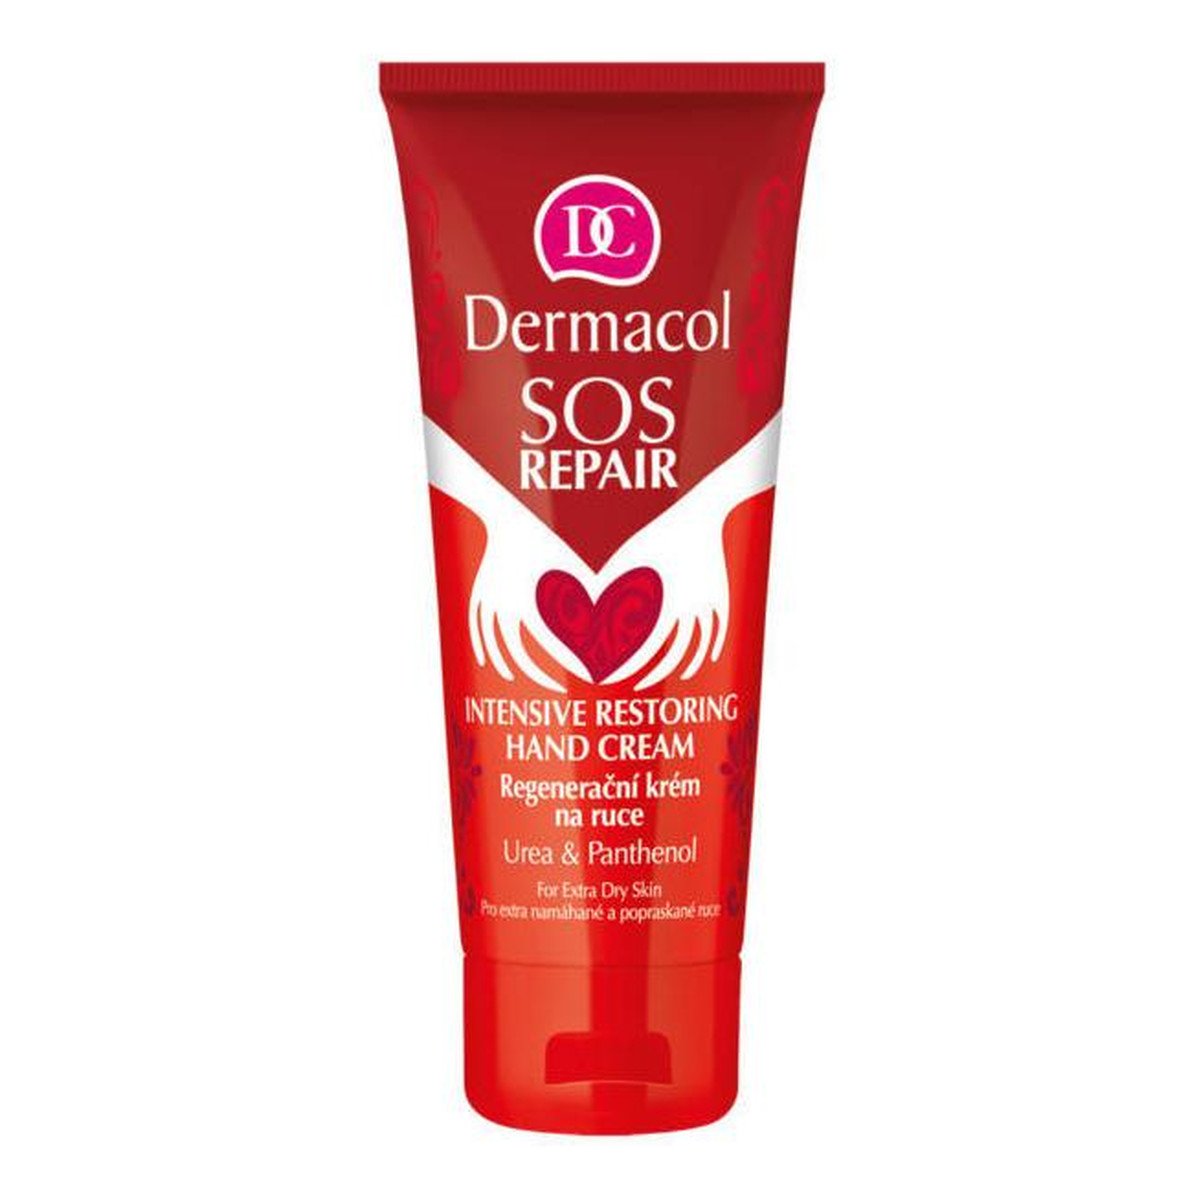 Dermacol SOS Repair Intensive Restoring Hand Cream intensywnie regenerujący Krem do rąk 75ml